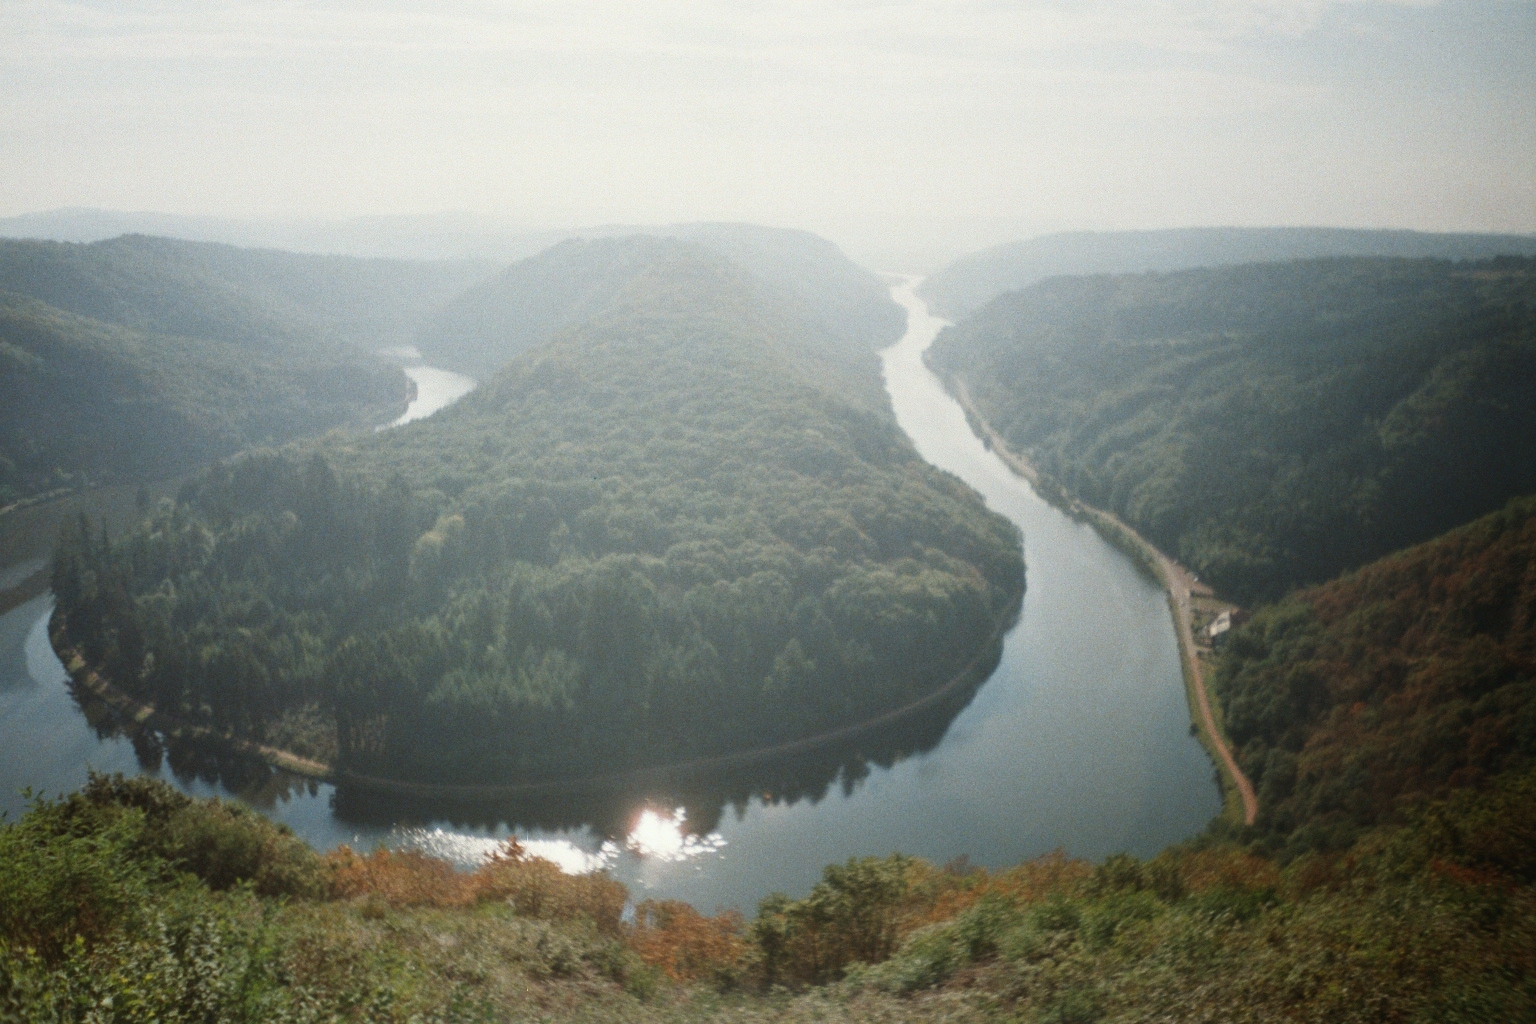 Saar River / Germany